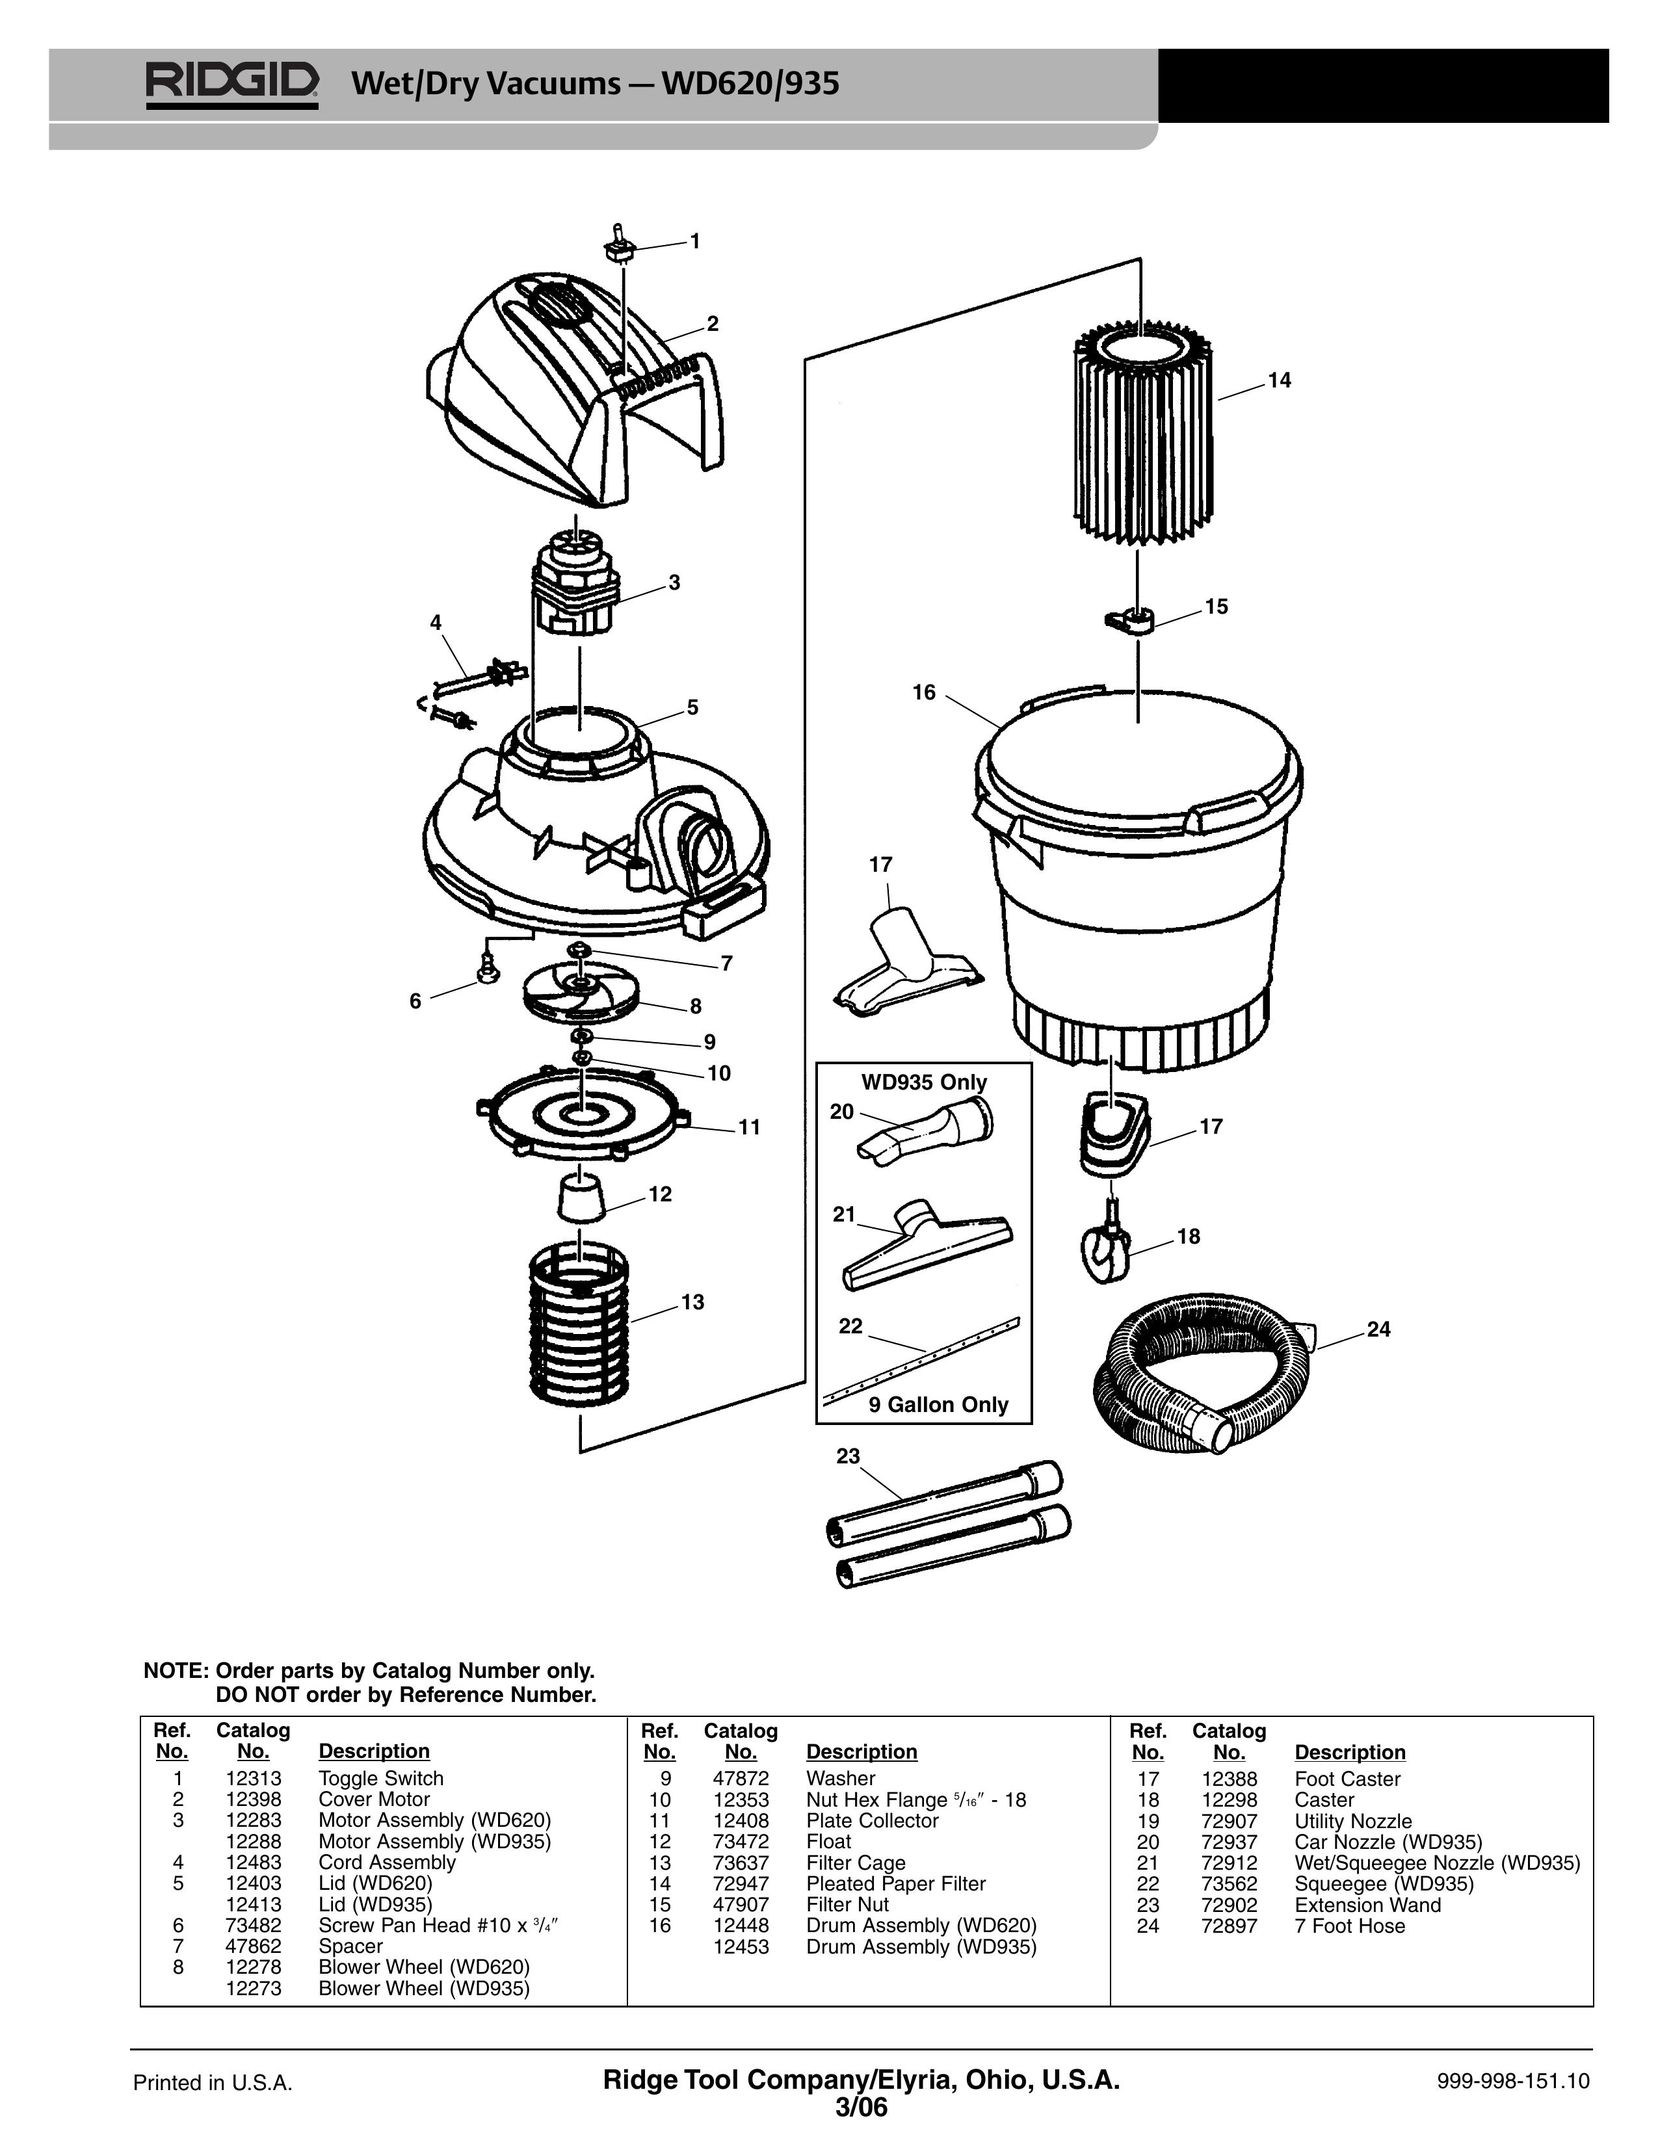 RIDGID WD620/WD935 Vacuum Cleaner User Manual